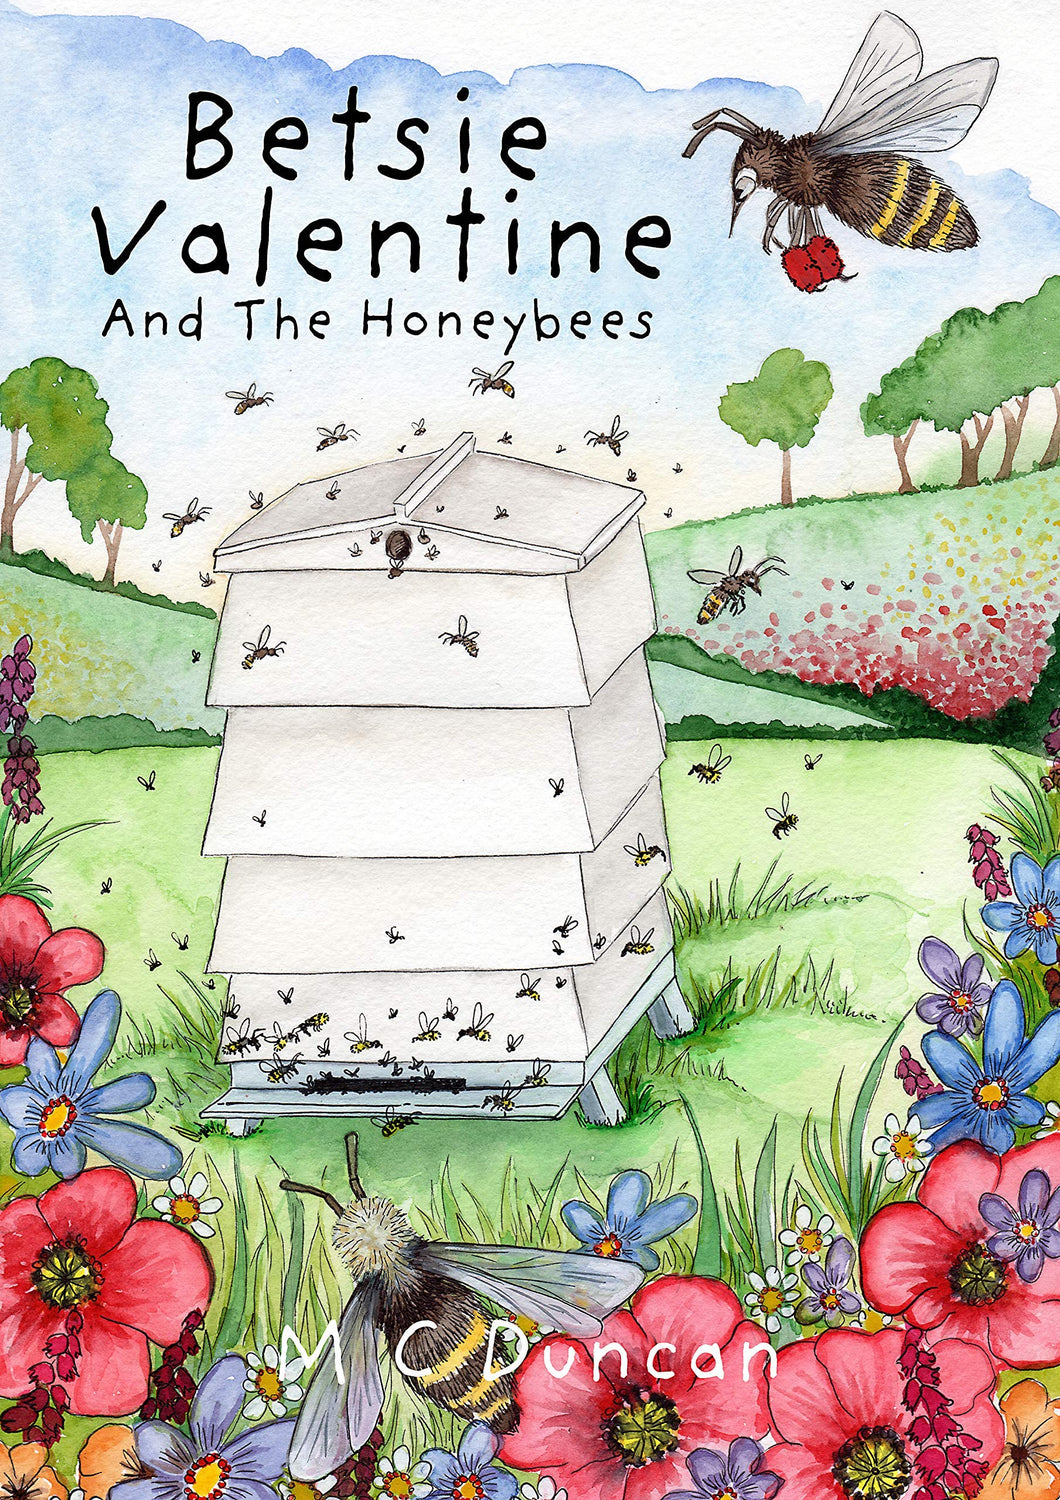 Betsie Valentine and the Honeybees - Duncan & Sharrard